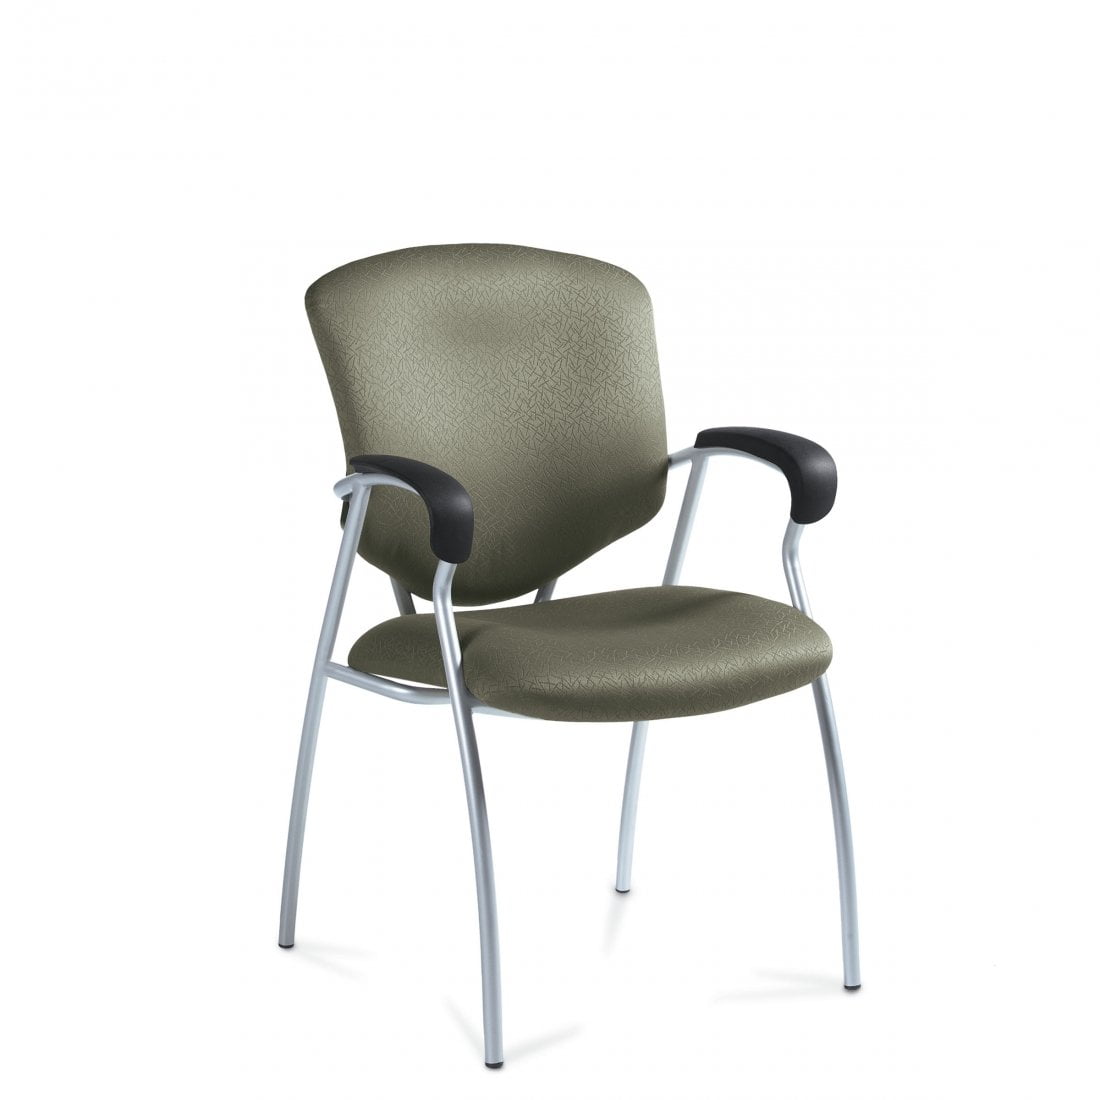 Supra 5332 guest arm chair